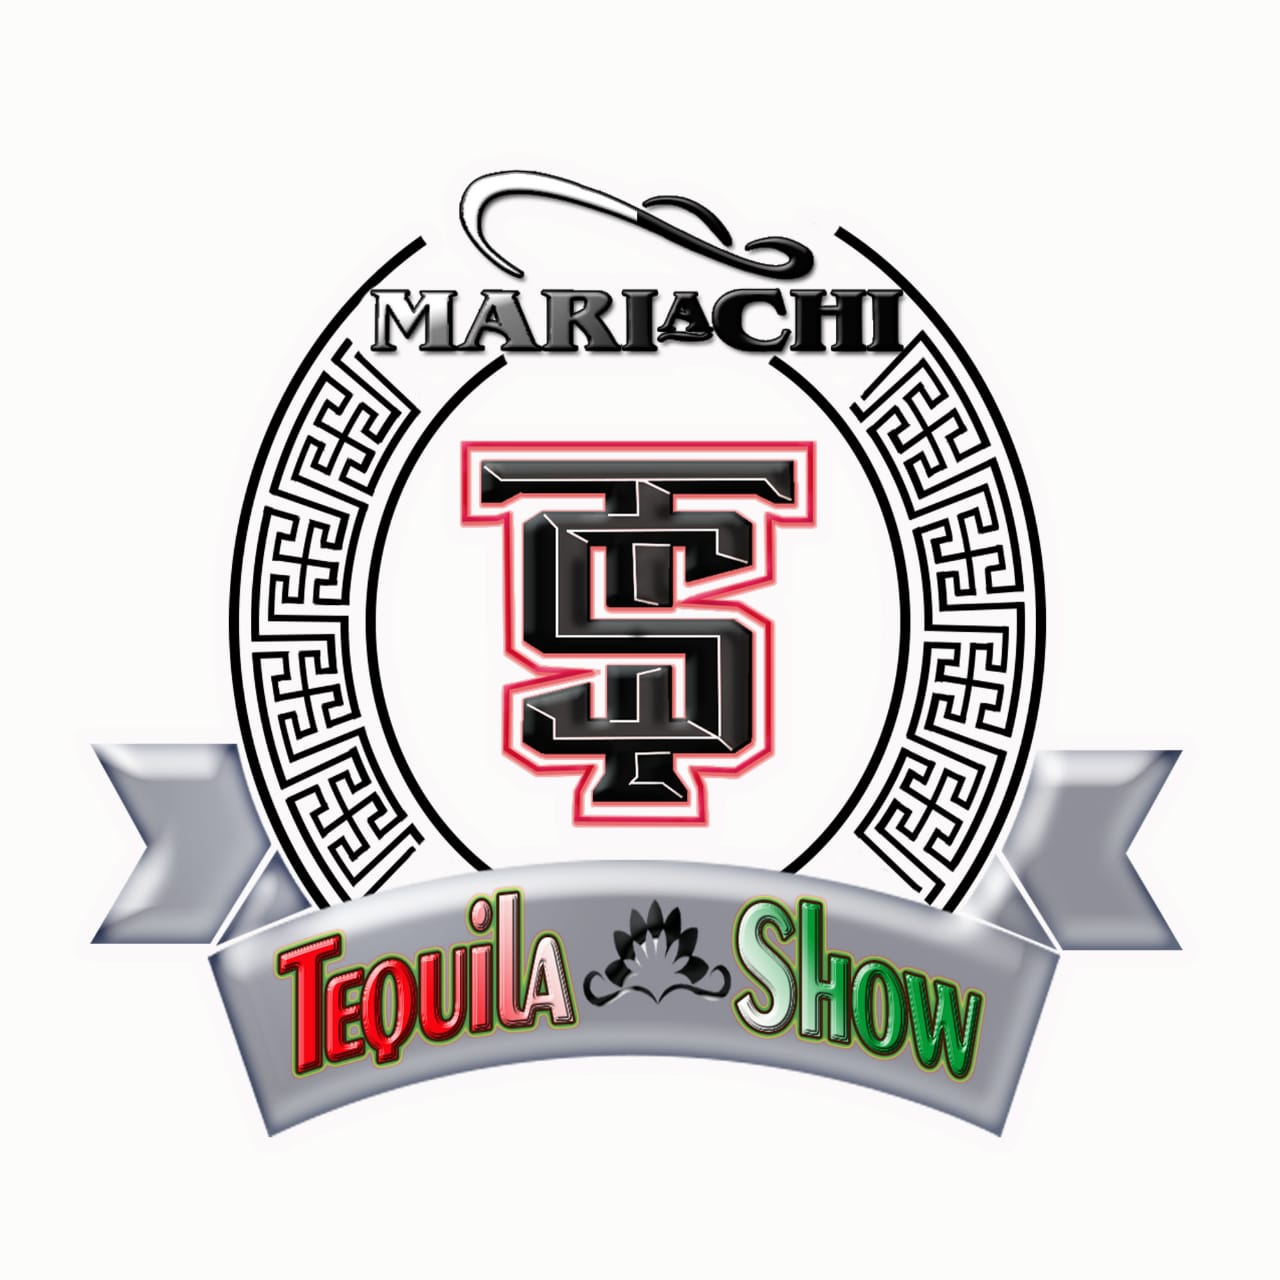 Mariachi Tequila Show